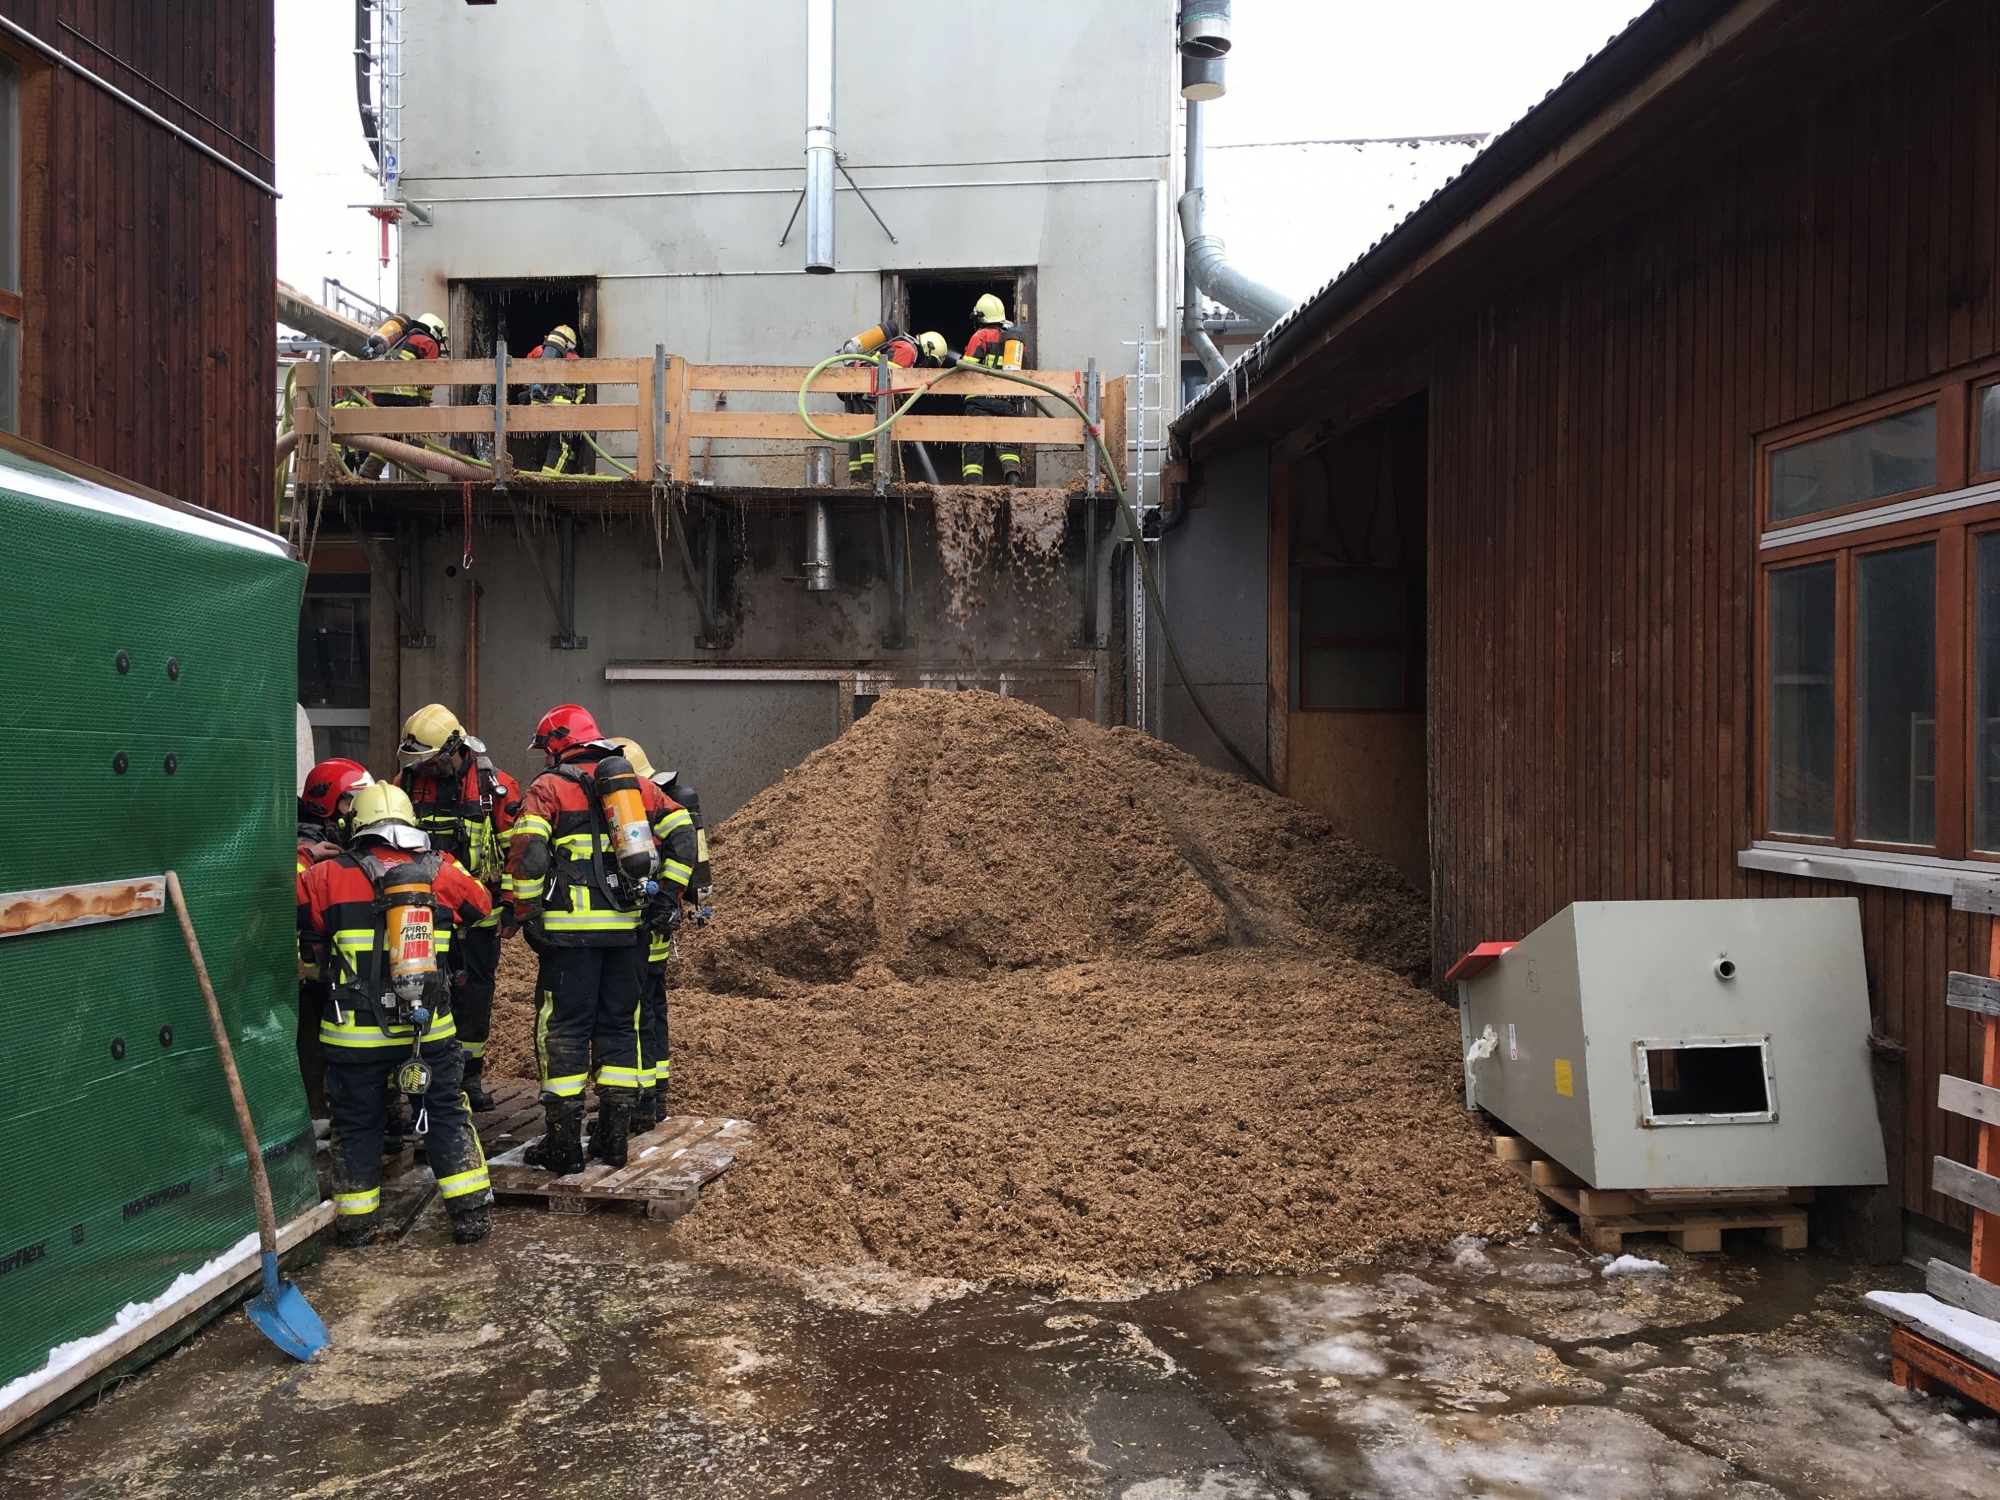 Les hommes du feu de plusieurs communes sont mobilisés, de même que les pompiers professionnels de Berne et de Bienne. Les raisons de l'incendie ne sont pas connues.